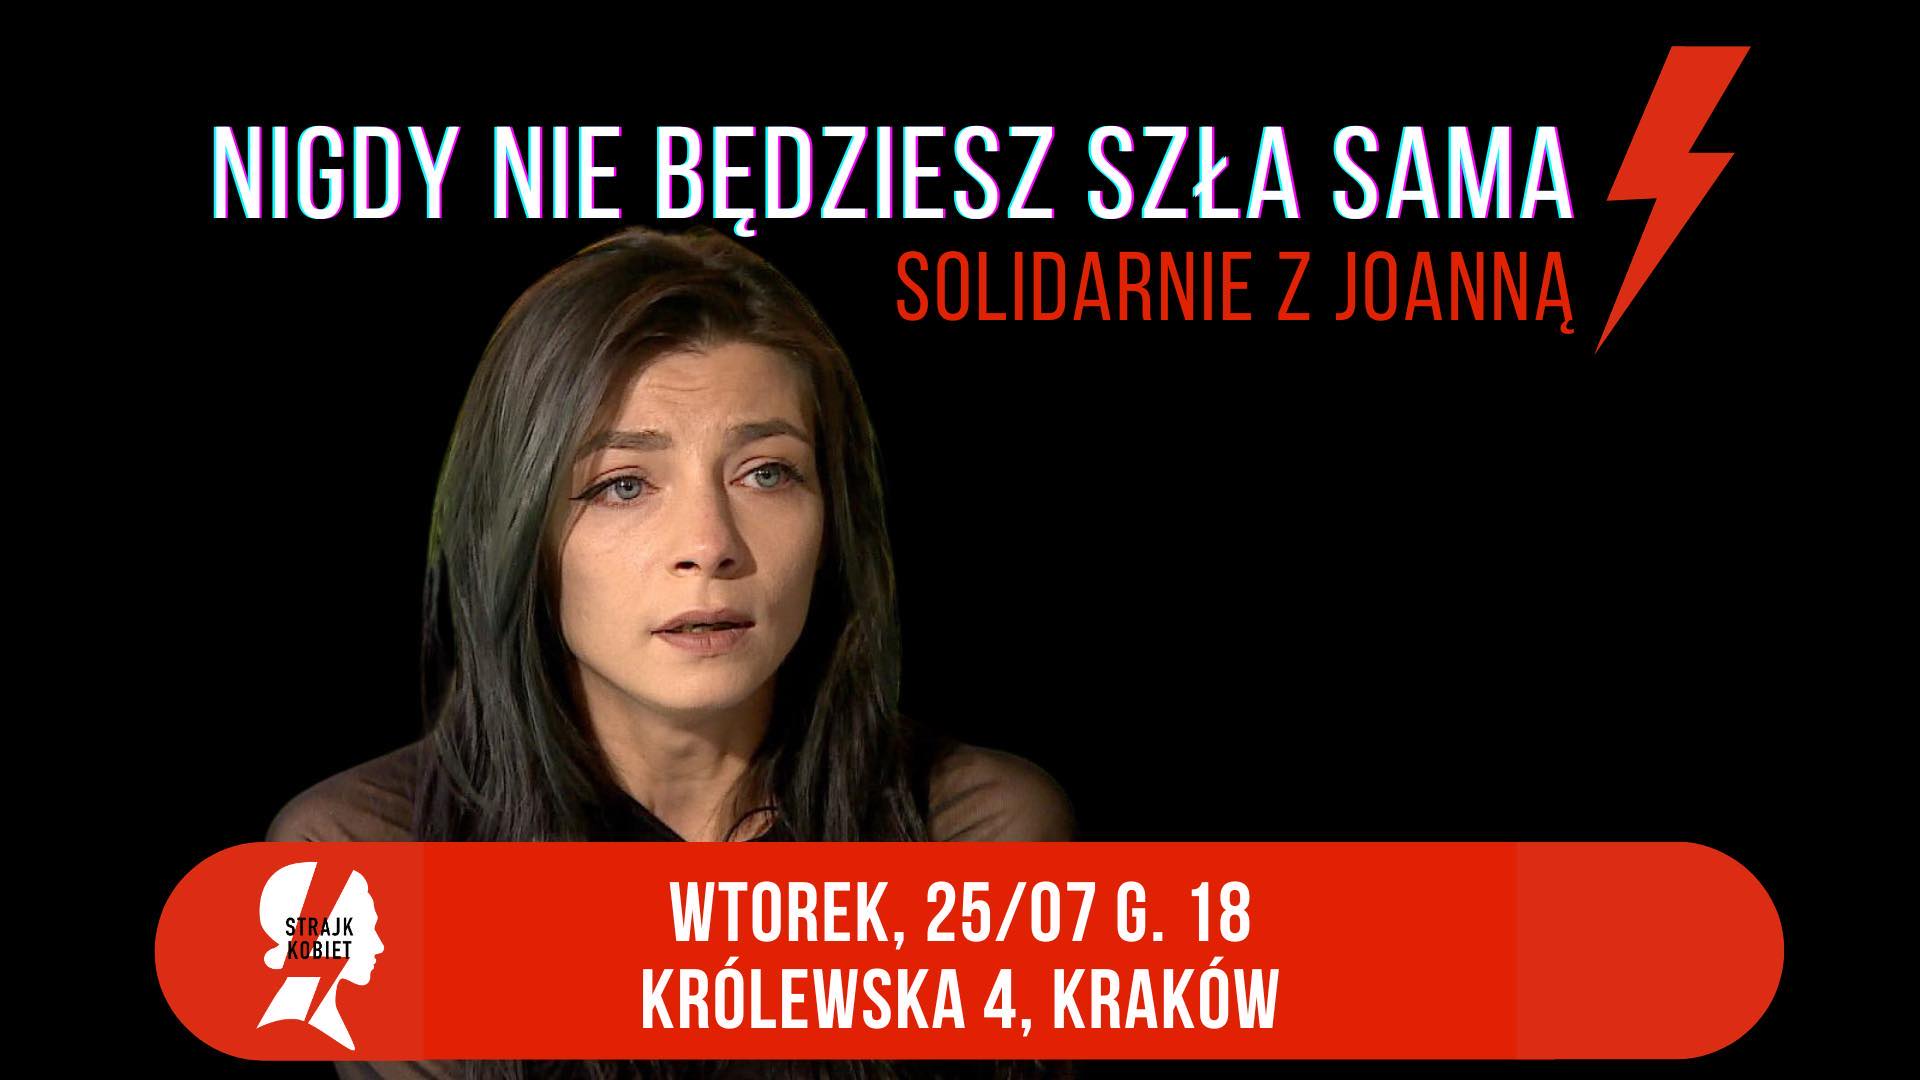 „Nigdy nie będziesz szła sama”. Kraków solidarny z panią Joanną, protest przed komendą policji